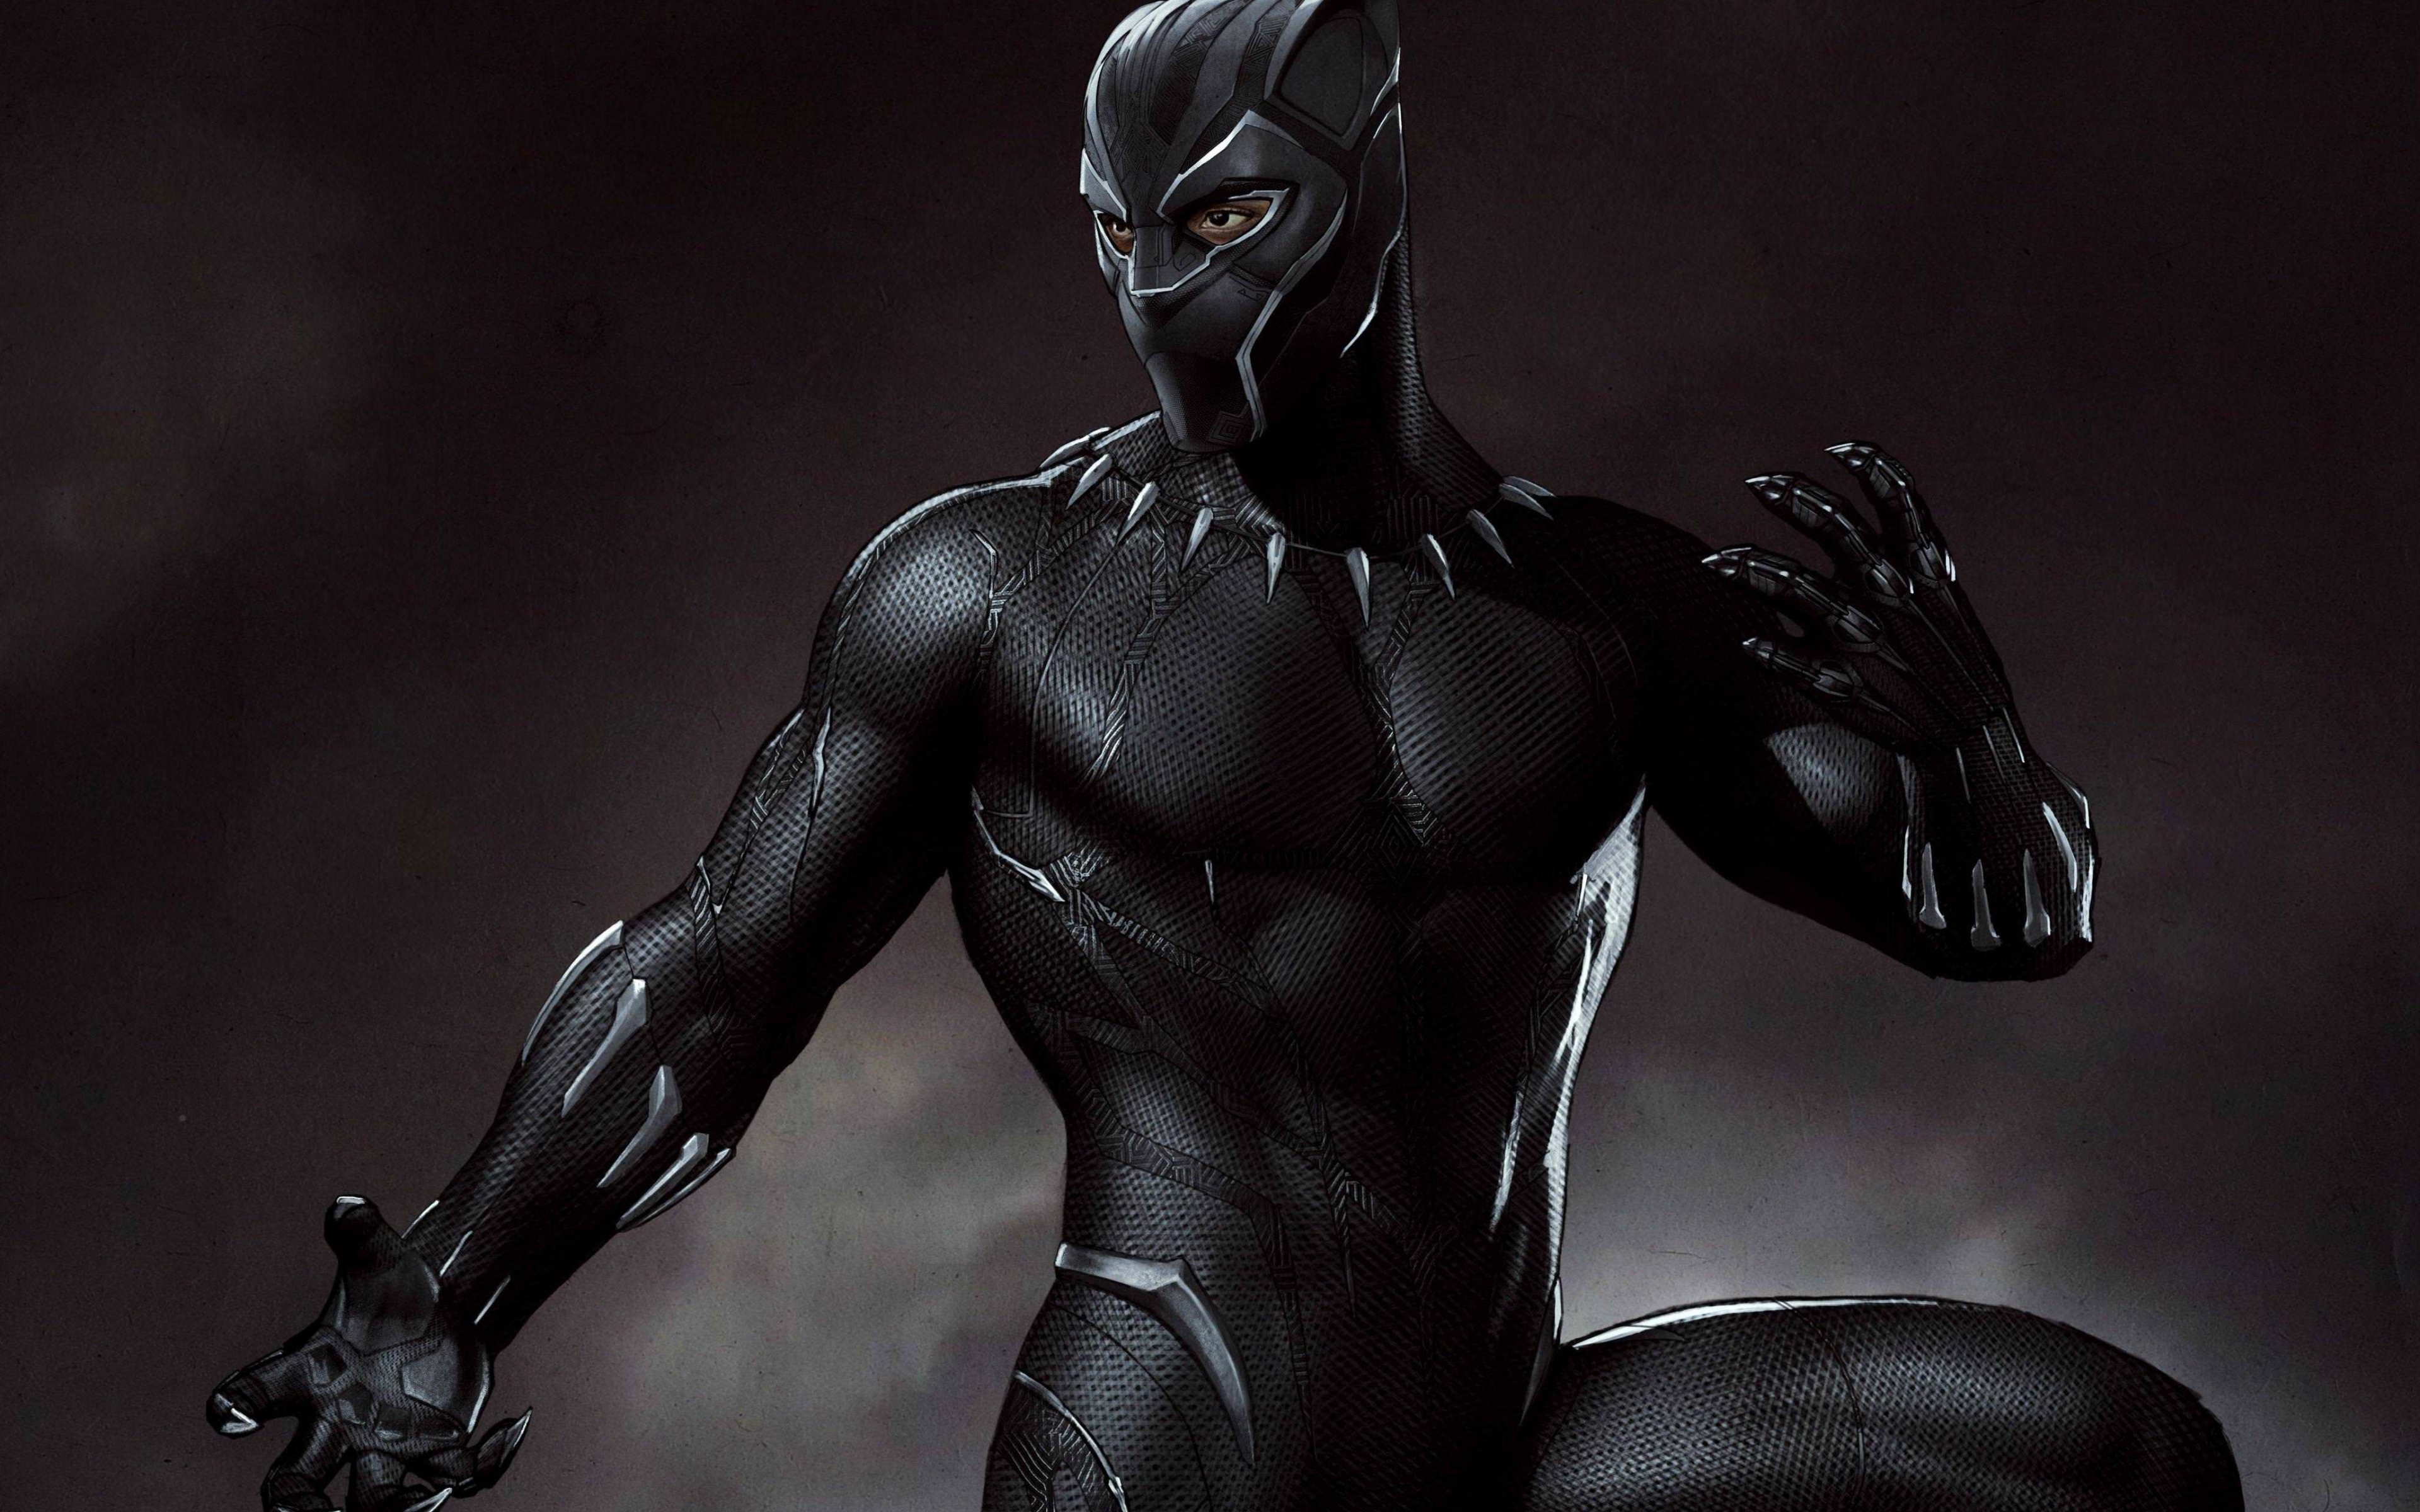 Download Marvel Black Panther Artwork 3840x2400 Resolution HD 4K